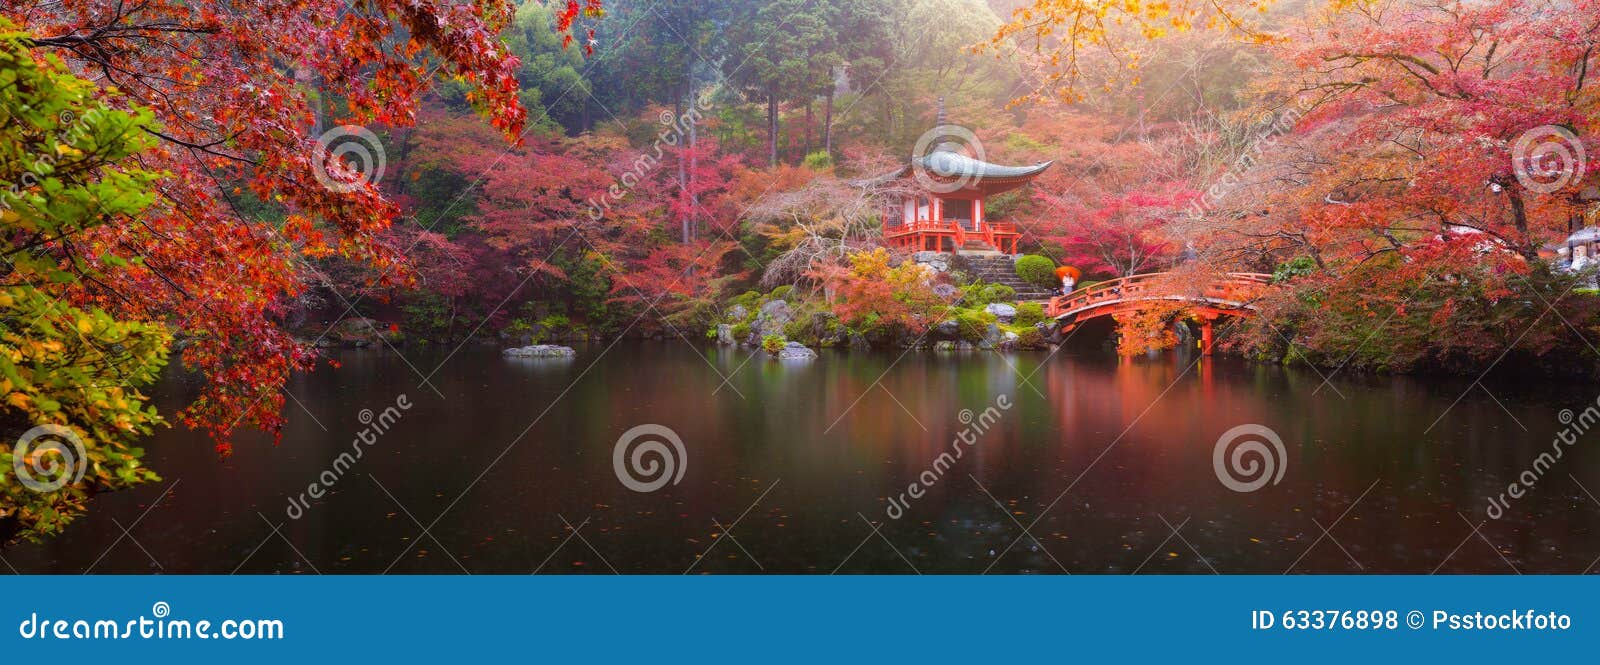 daigo-ji temple in autumn